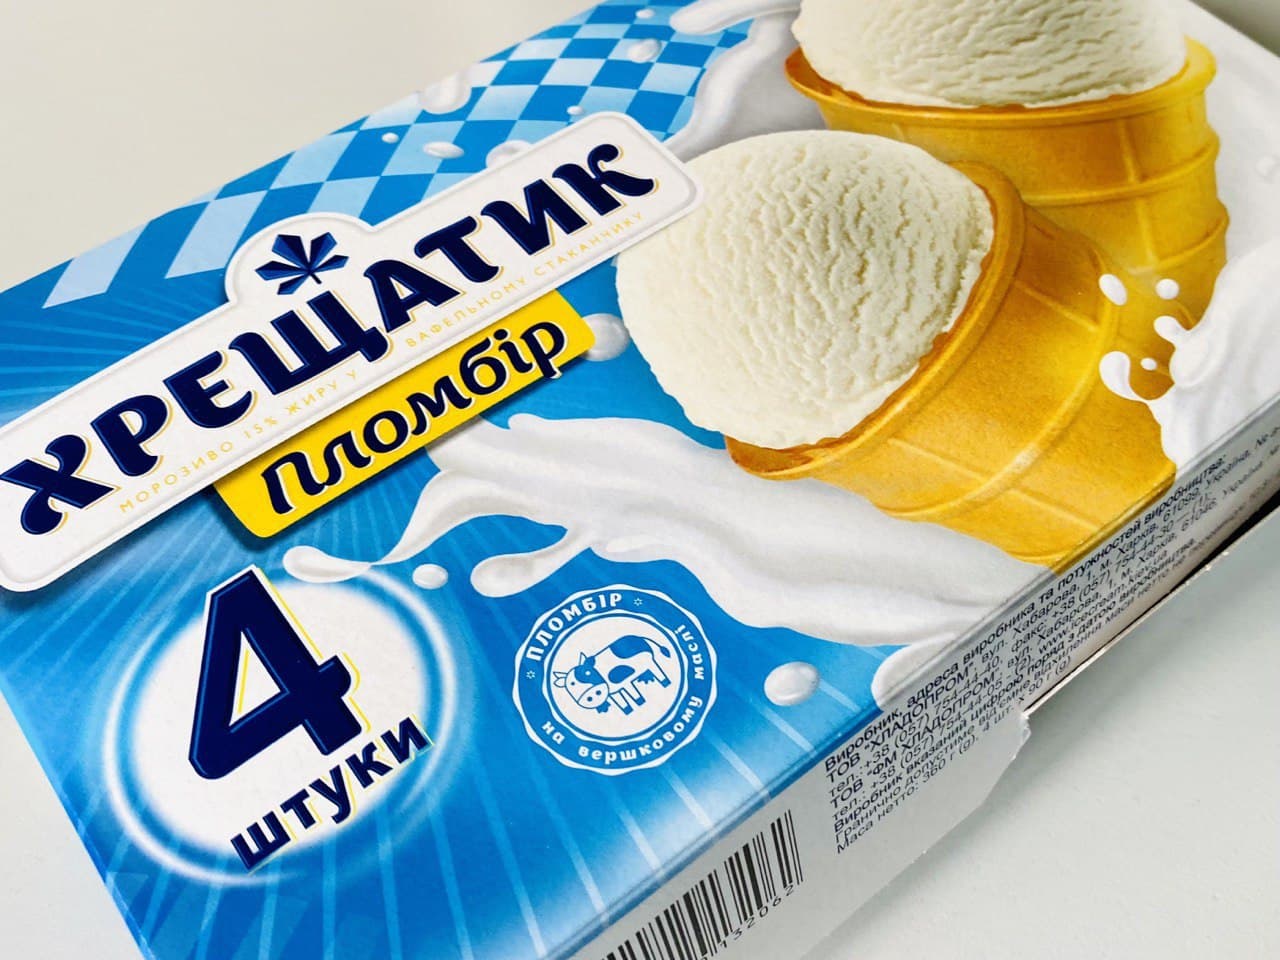 Die Wiederbelebung der Industrie heißt die Gesellschaft mit beschränkter Haftung KHLADOPROM - die Speiseeisfabrik mit der ältesten Geschichte der Herstellung des Speise-eises in der Ukraine - Nachrichten - Khladoprom Ice Cream Factory